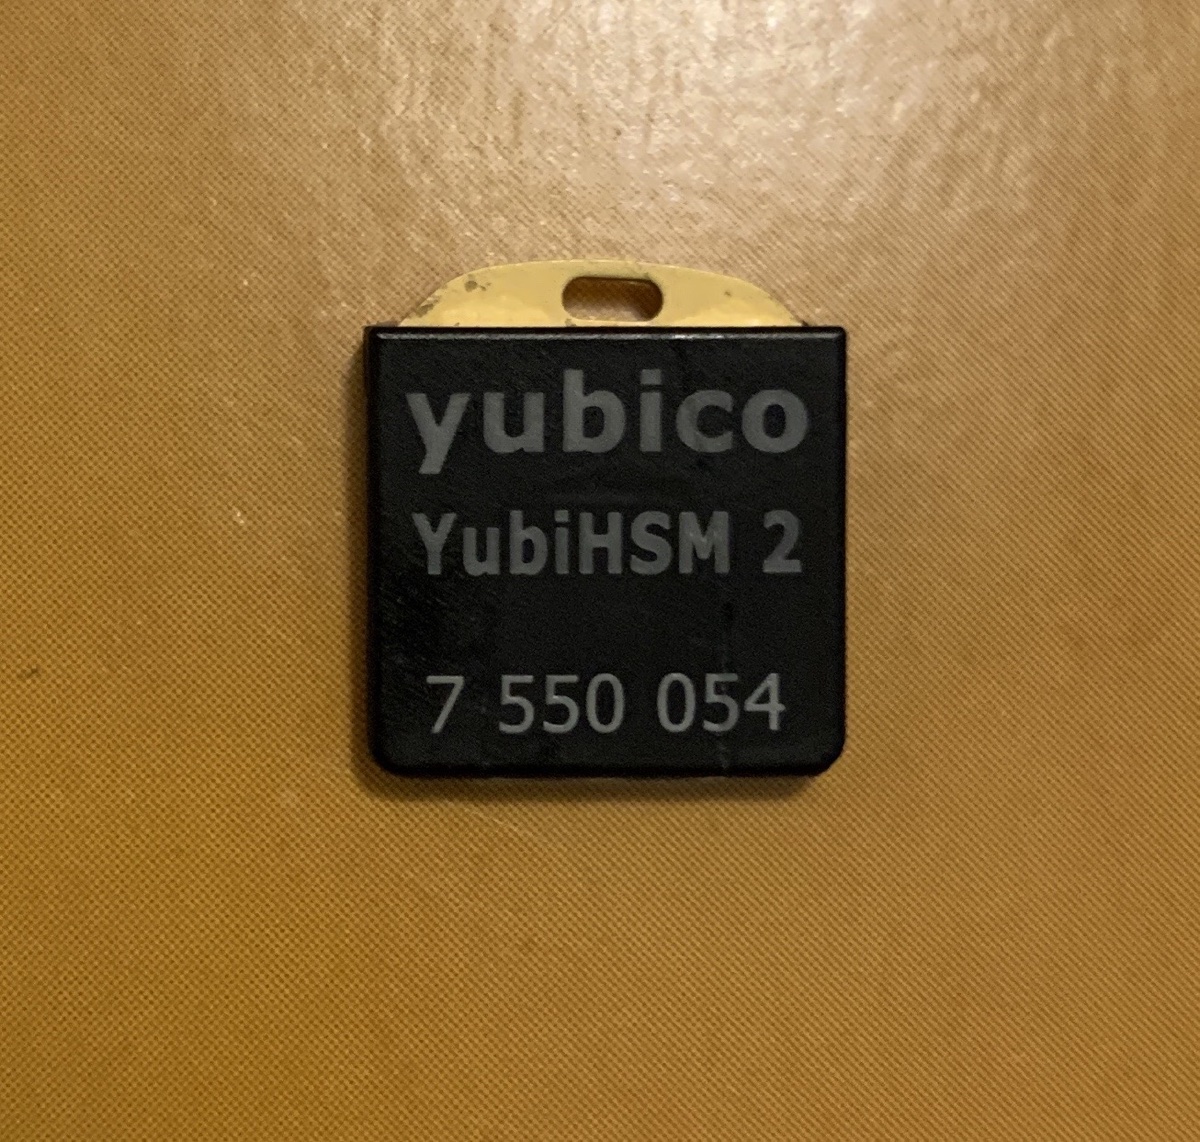 A YubiHSM 2